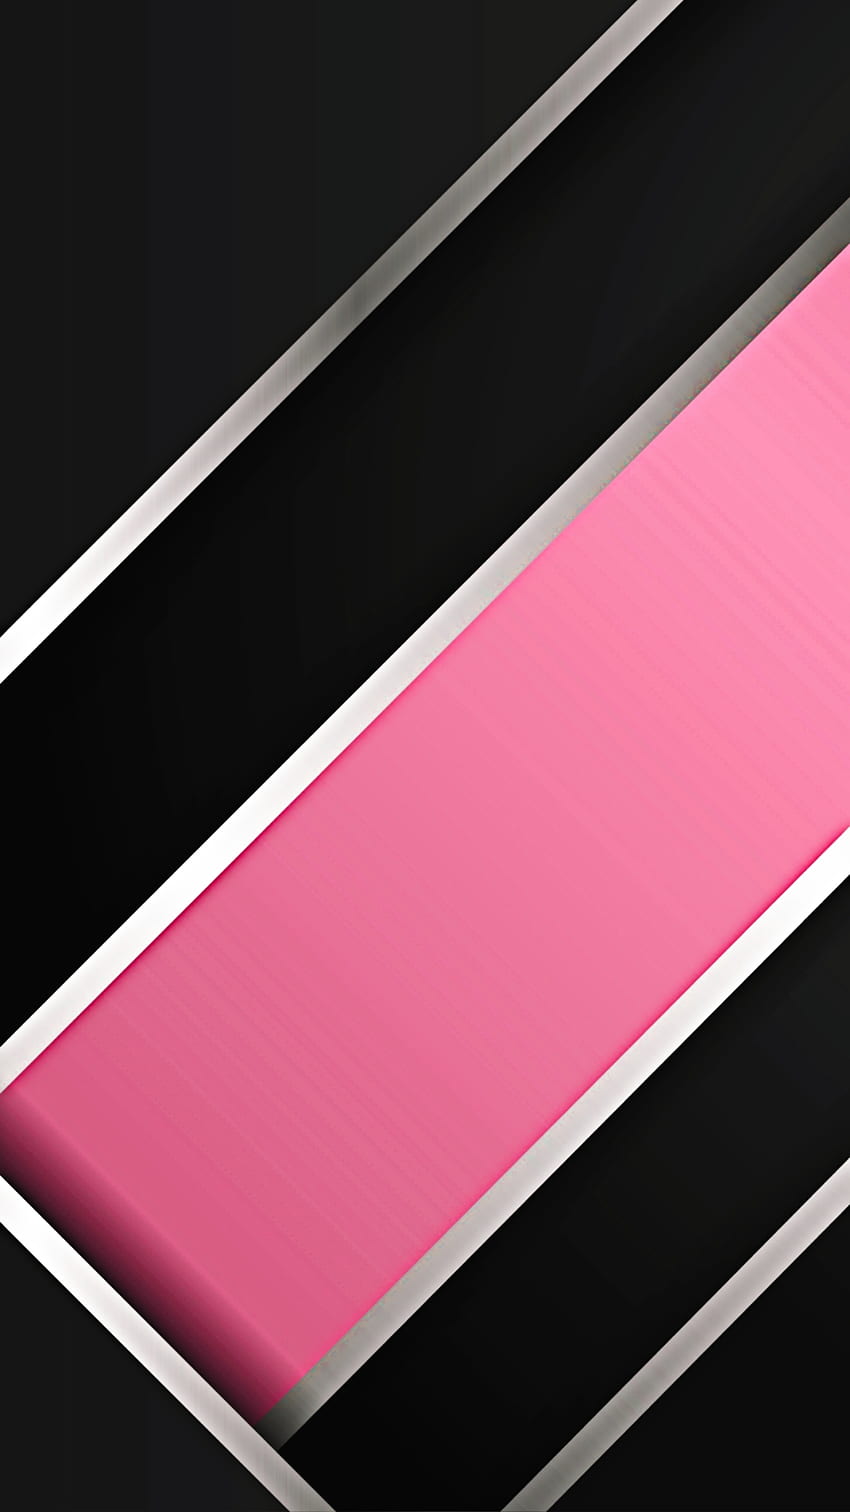 マテリアル デザイン ピンク, ストライプ, 素晴らしい, amoled, モダン, ネオン, テクスチャ, クール, シルバー, 抽象, ライン HD電話の壁紙